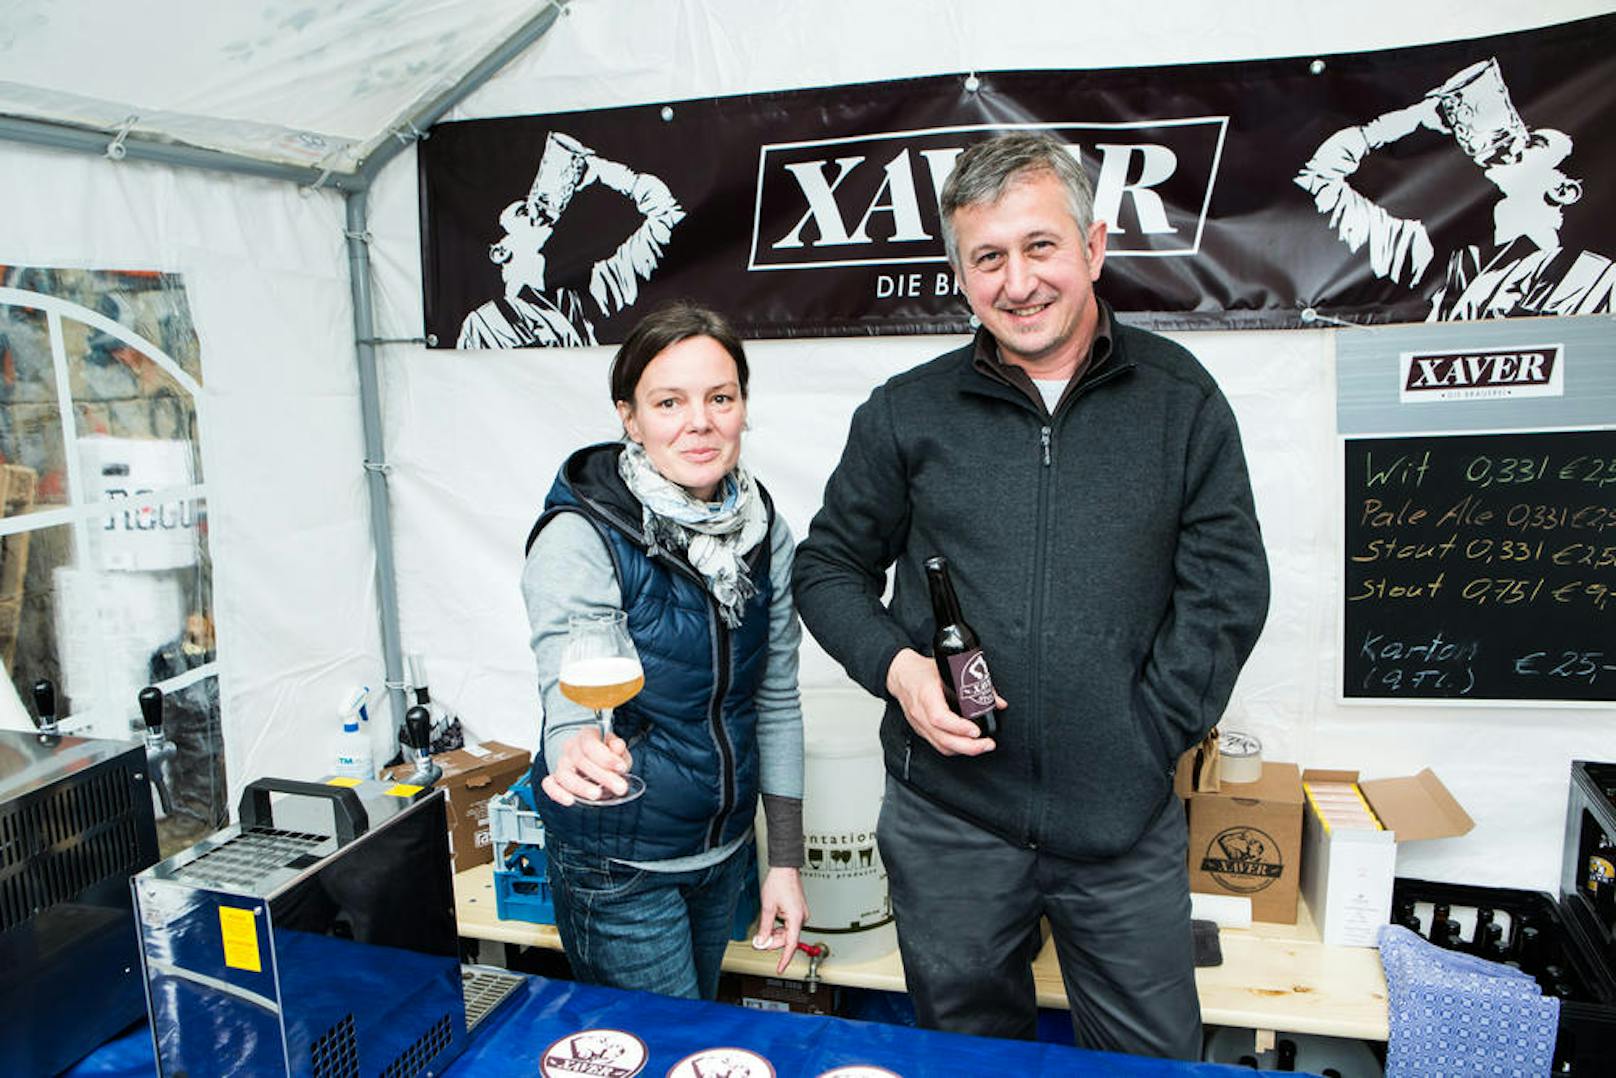 Bier aus Wien: Der Xaver Stand beim Craft Bier Fest 2013